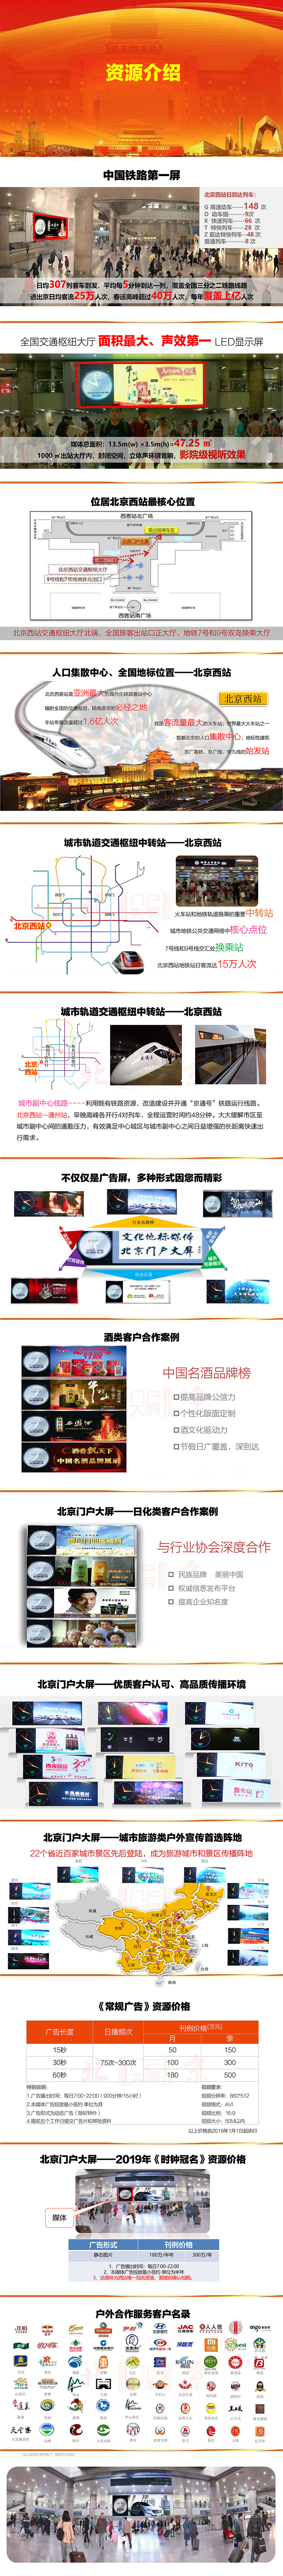 北京西站大屏广告--图.jpg